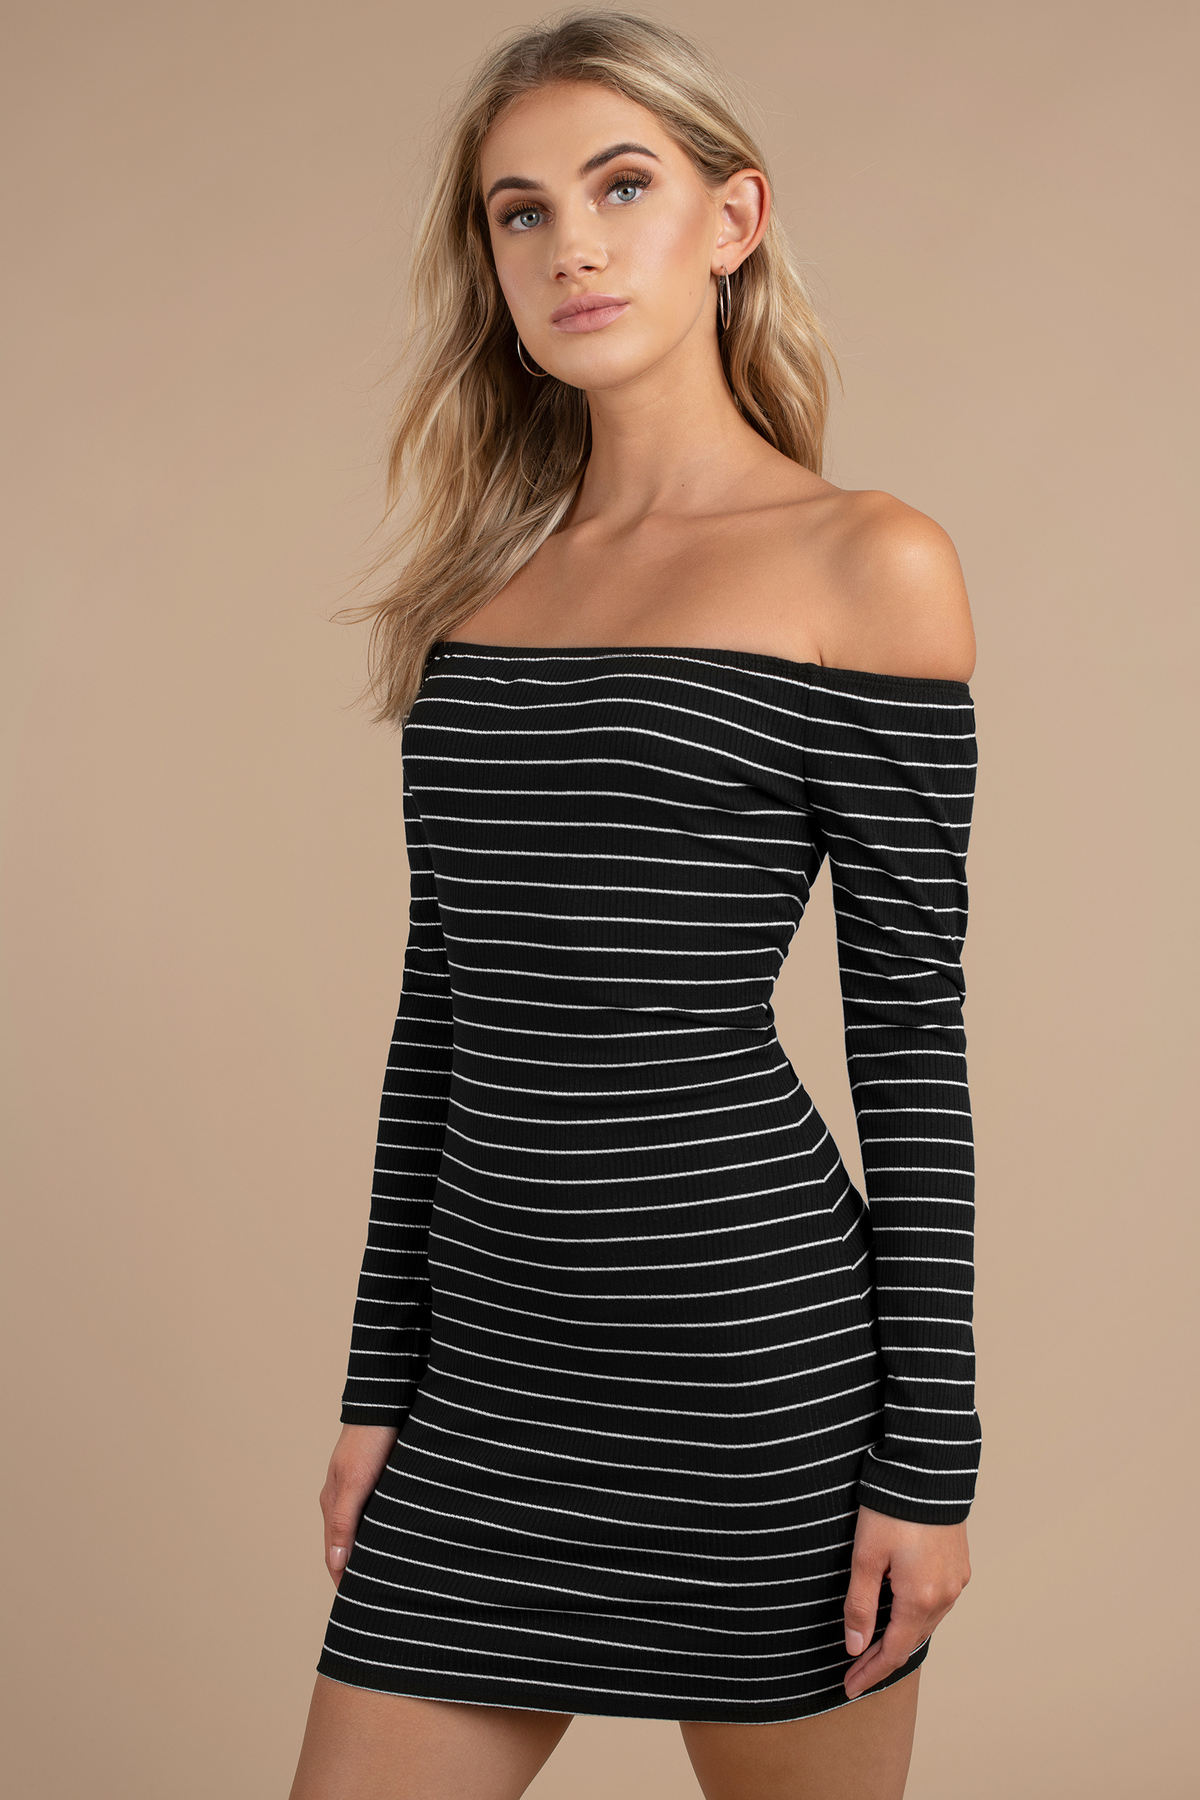 Fran Striped Off Shoulder Dress in Black - $15 | Tobi US